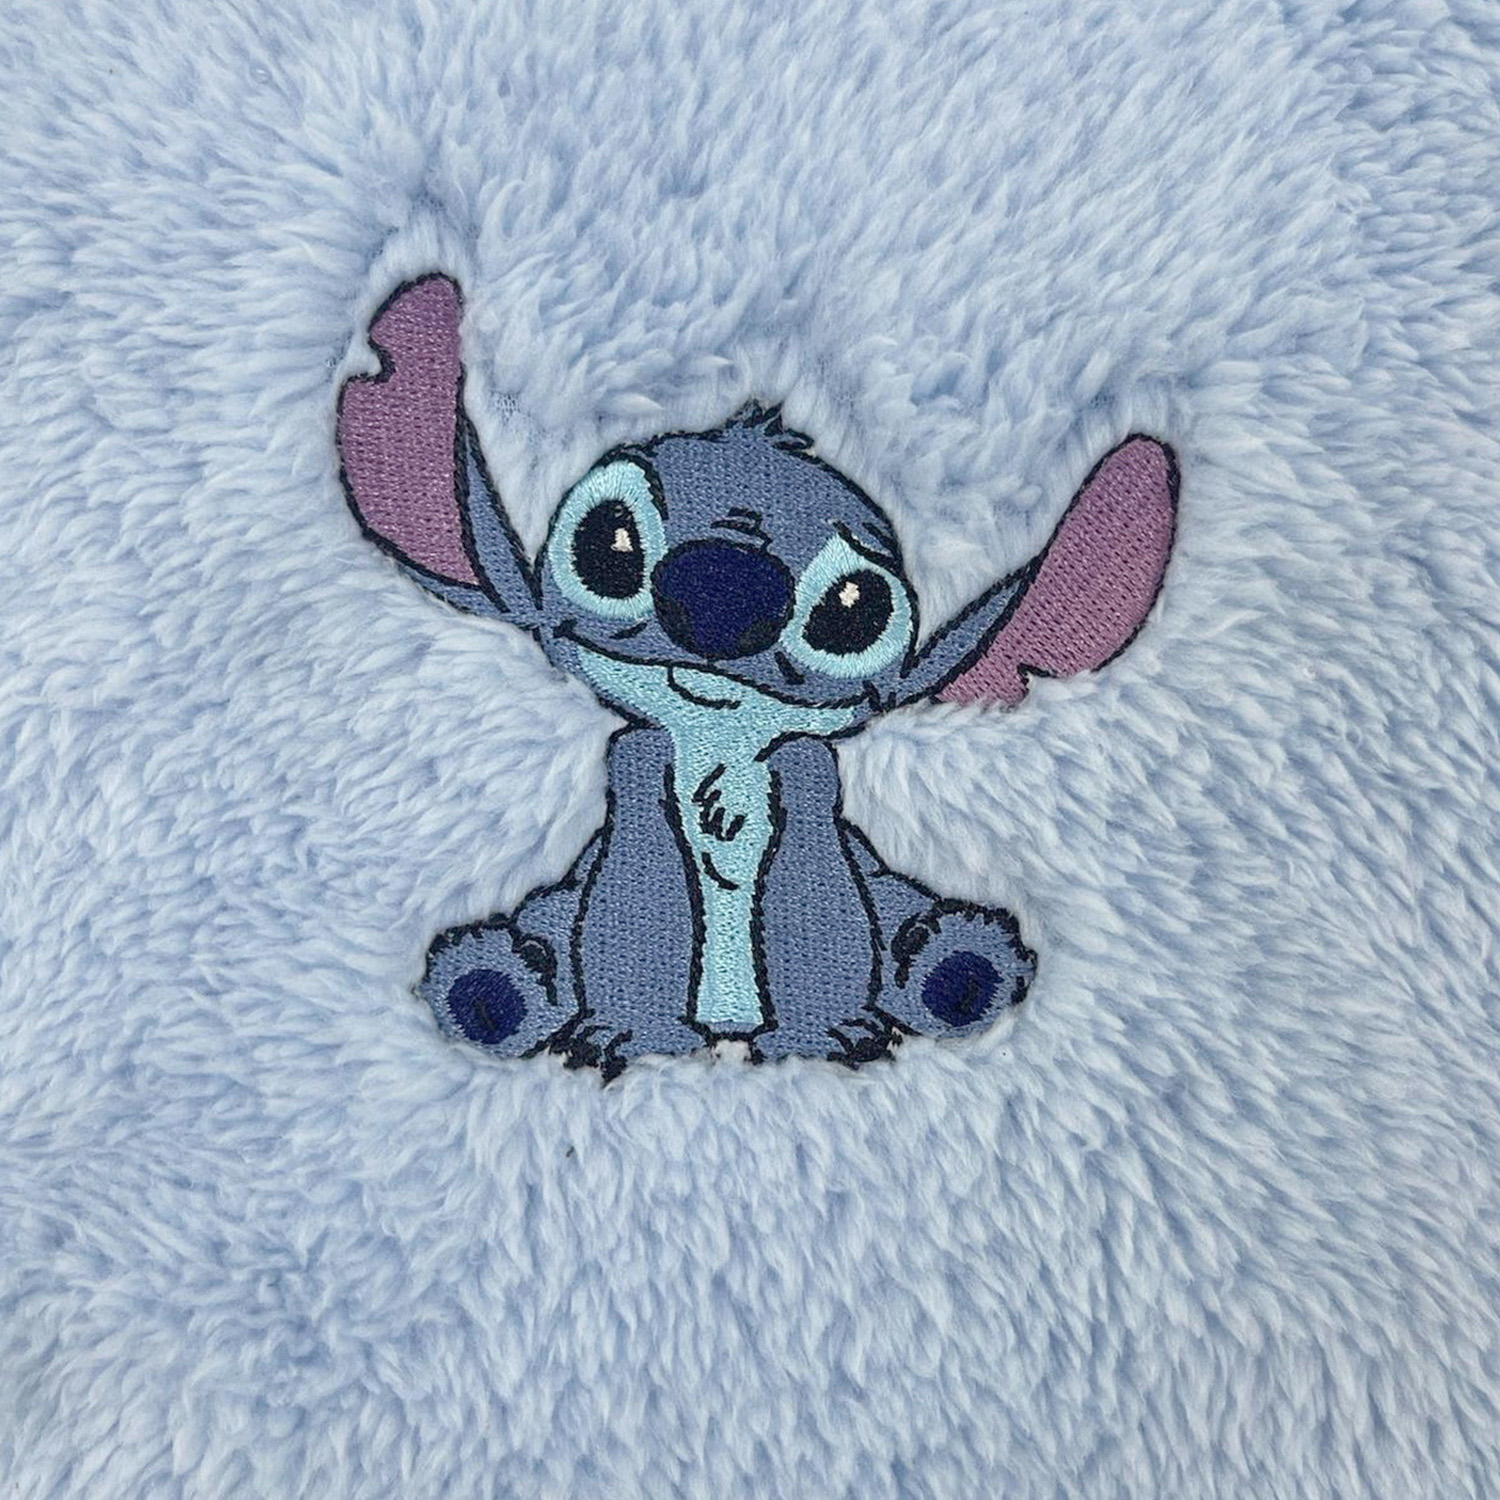 Peignoir pour enfant - Stitch - Taille 10 ans - Disney